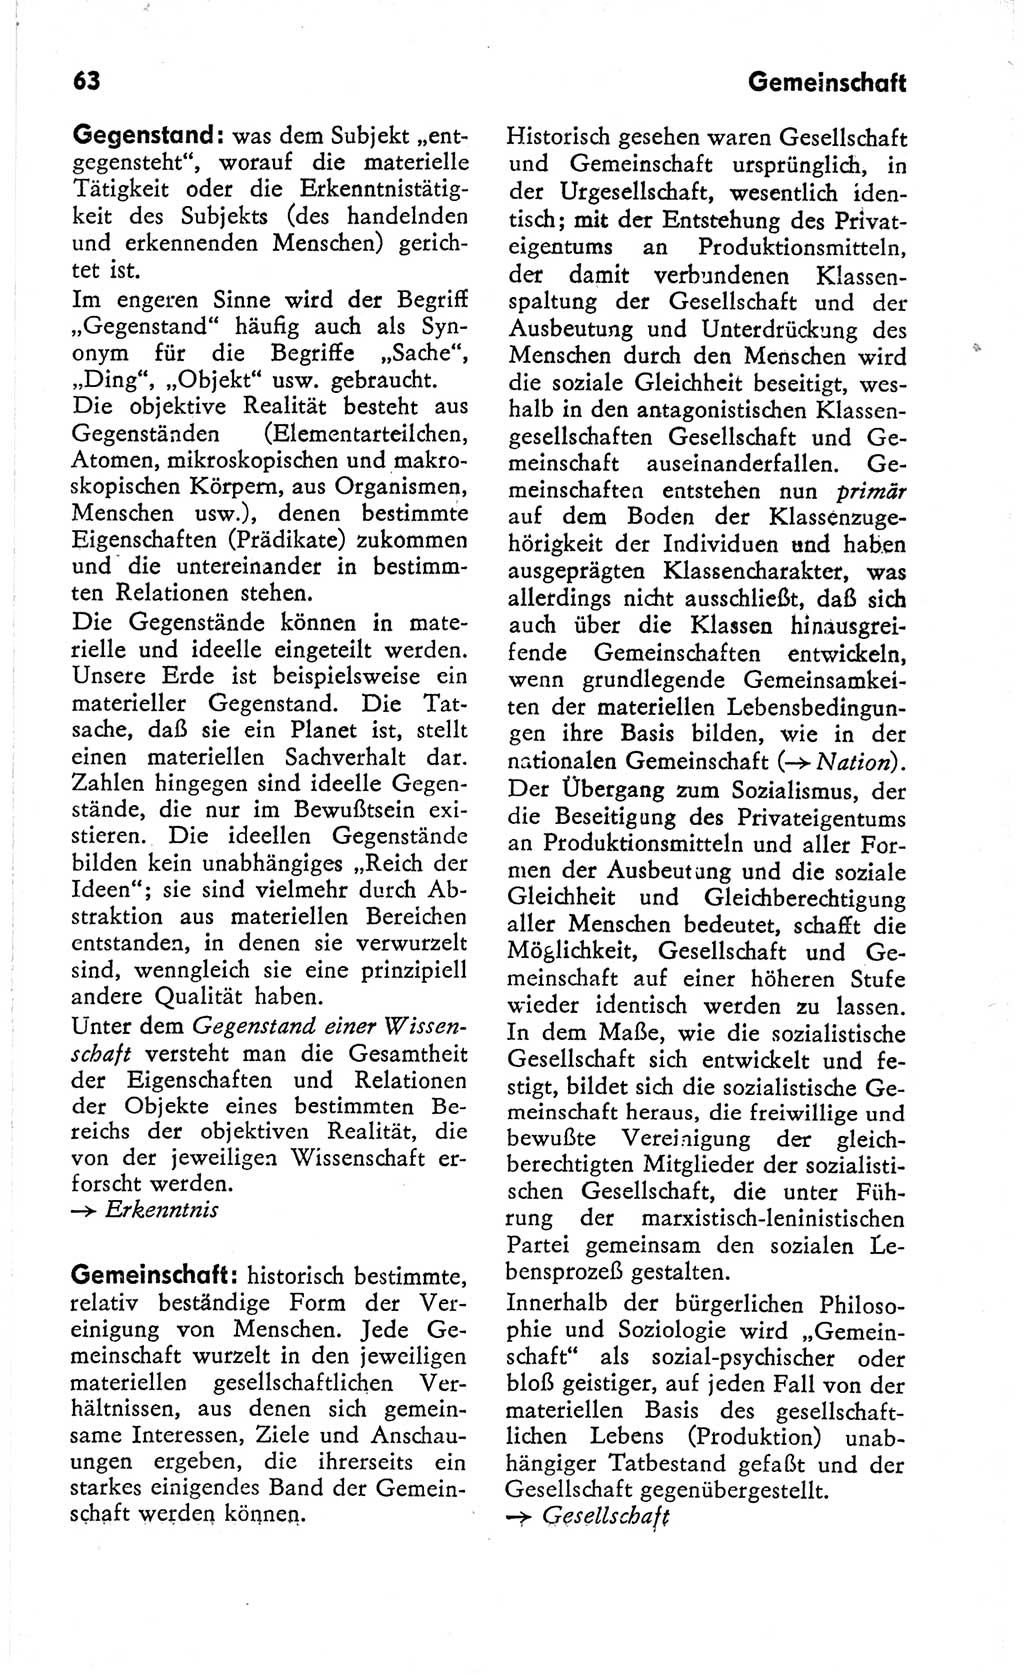 Kleines Wörterbuch der marxistisch-leninistischen Philosophie [Deutsche Demokratische Republik (DDR)] 1966, Seite 63 (Kl. Wb. ML Phil. DDR 1966, S. 63)